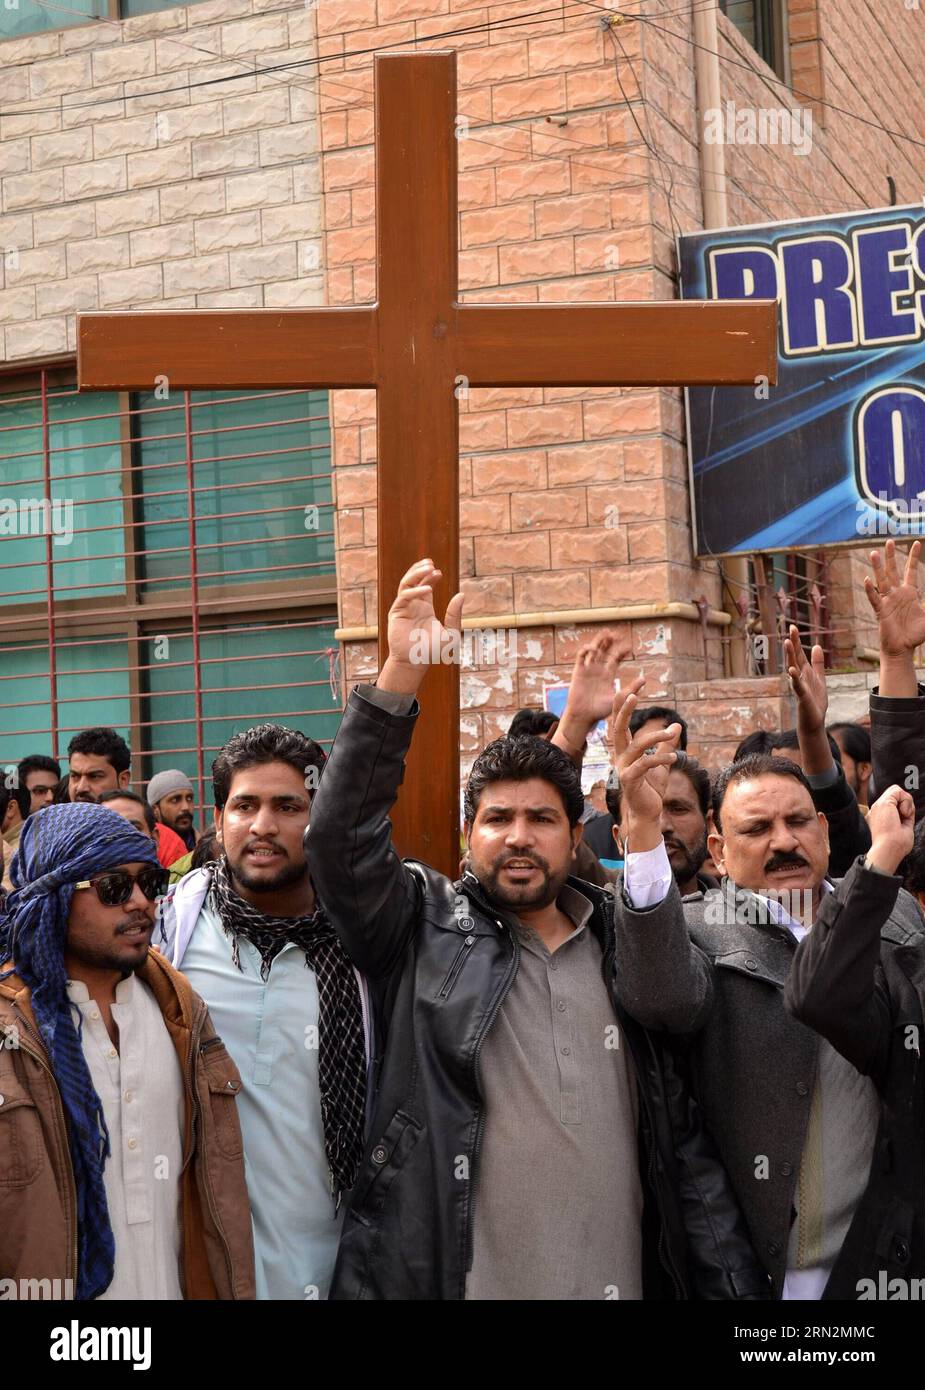 (150315) -- QUETTA, 15 mars 2015 -- des chrétiens pakistanais protestent contre les attentats suicides à la bombe perpétrés contre des églises de Lahore, dans le sud-ouest de Quetta, le 15 mars 2015. Au moins 14 personnes ont été tuées et 78 autres blessées lorsque deux kamikazes se sont fait exploser dimanche à l entrée d églises dans la ville de Lahore, dans l est du Pakistan, ont indiqué des sources hospitalières. PAKISTAN-QUETTA-CHRÉTIENS-PROTEST Asad PUBLICATIONxNOTxINxCHN Quetta Mars 15 2015 les Chrétiens pakistanais protestent contre les attentats à la bombe suicide CONTRE les églises de Lahore dans le sud-ouest du Pakistan S Quetta LE 15 2015 Mars AU moins 14 Cel Banque D'Images